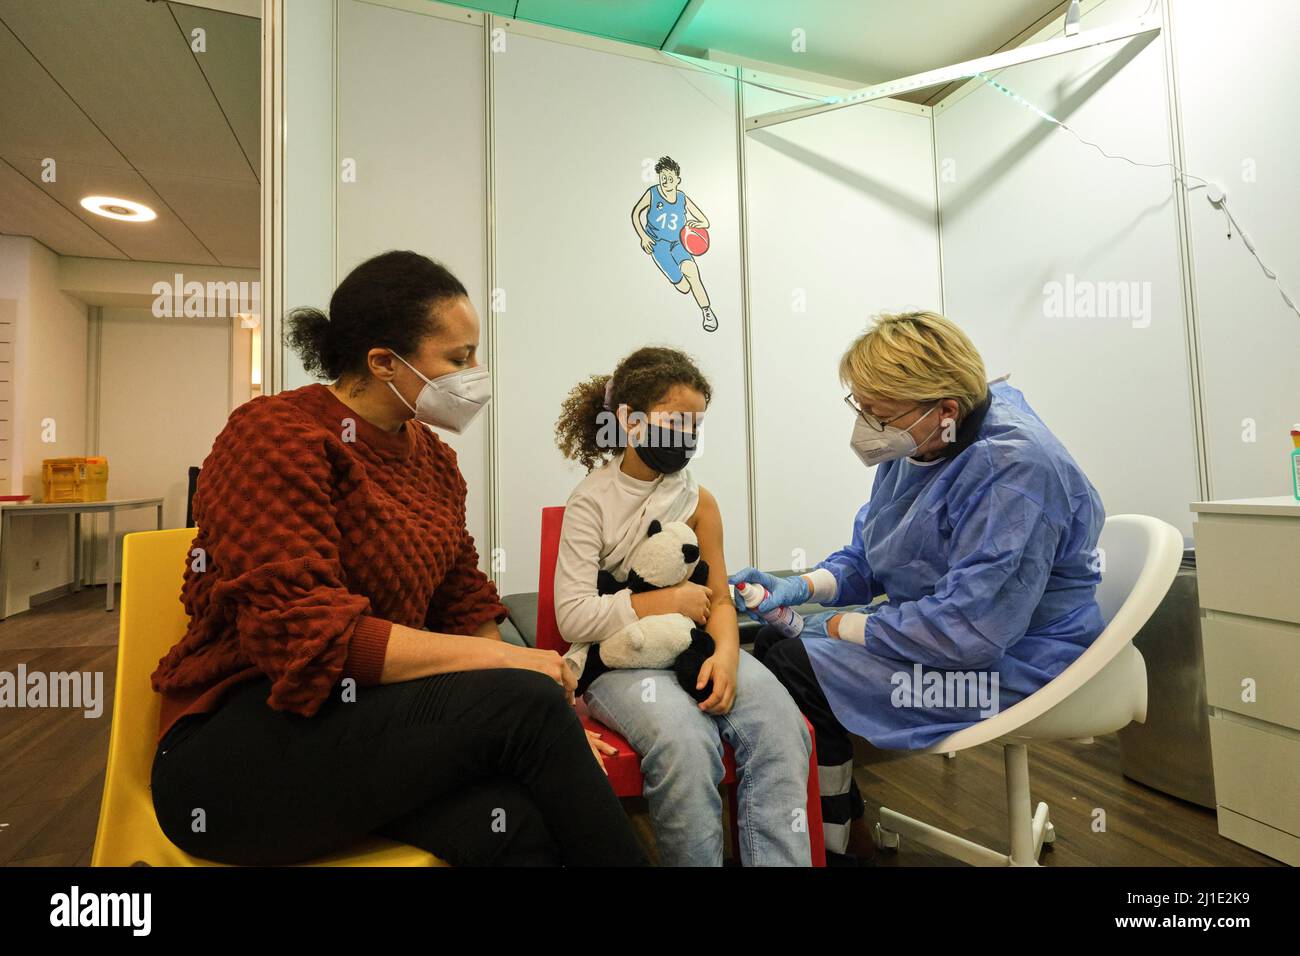 20.12.2021, Alemania, Bremen, Bremen - Centro de vacunación infantil operado por ASB y Johannitre-Unfall-Hilfe, niña espera la vacunación. 00A211220D009CARO Foto de stock